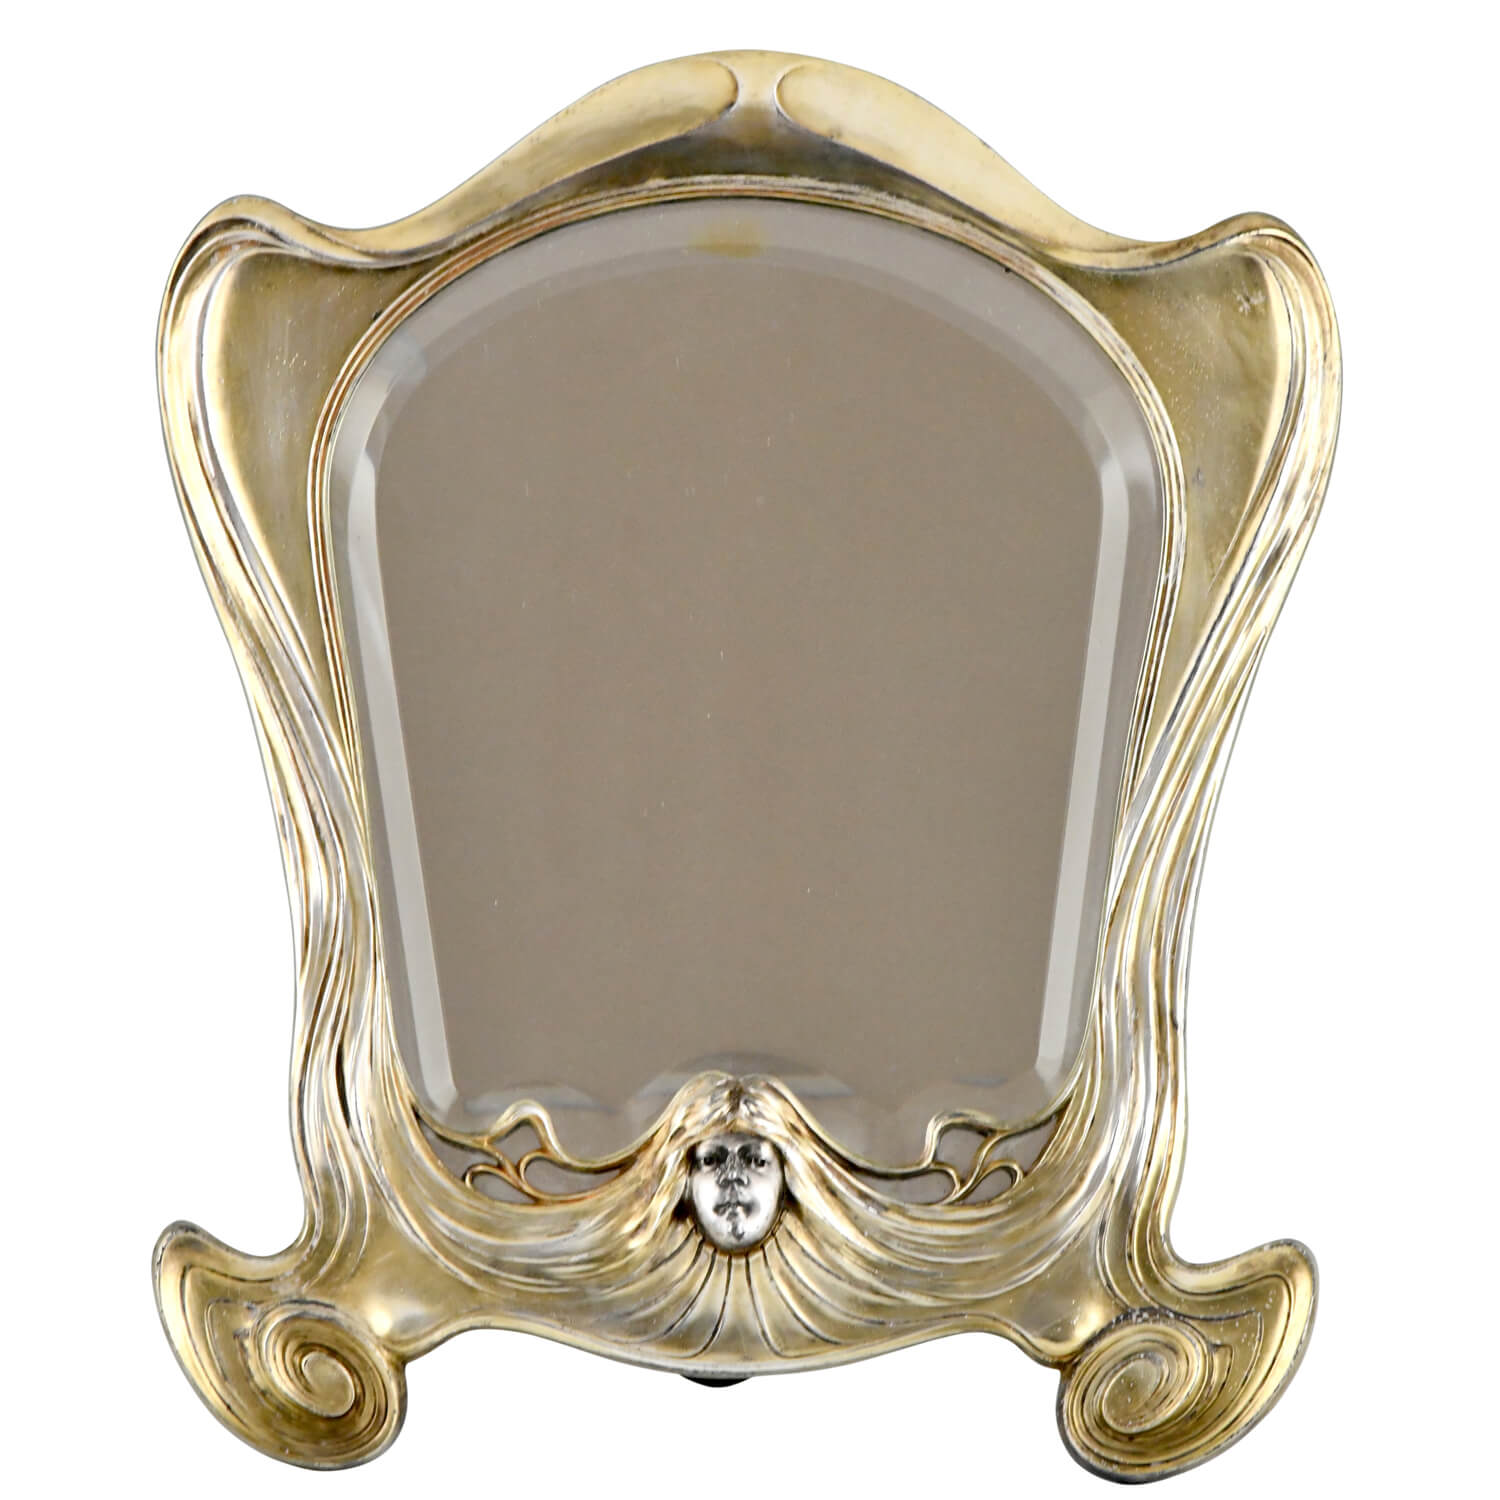 Orivit Art Nouveau mirror with lady